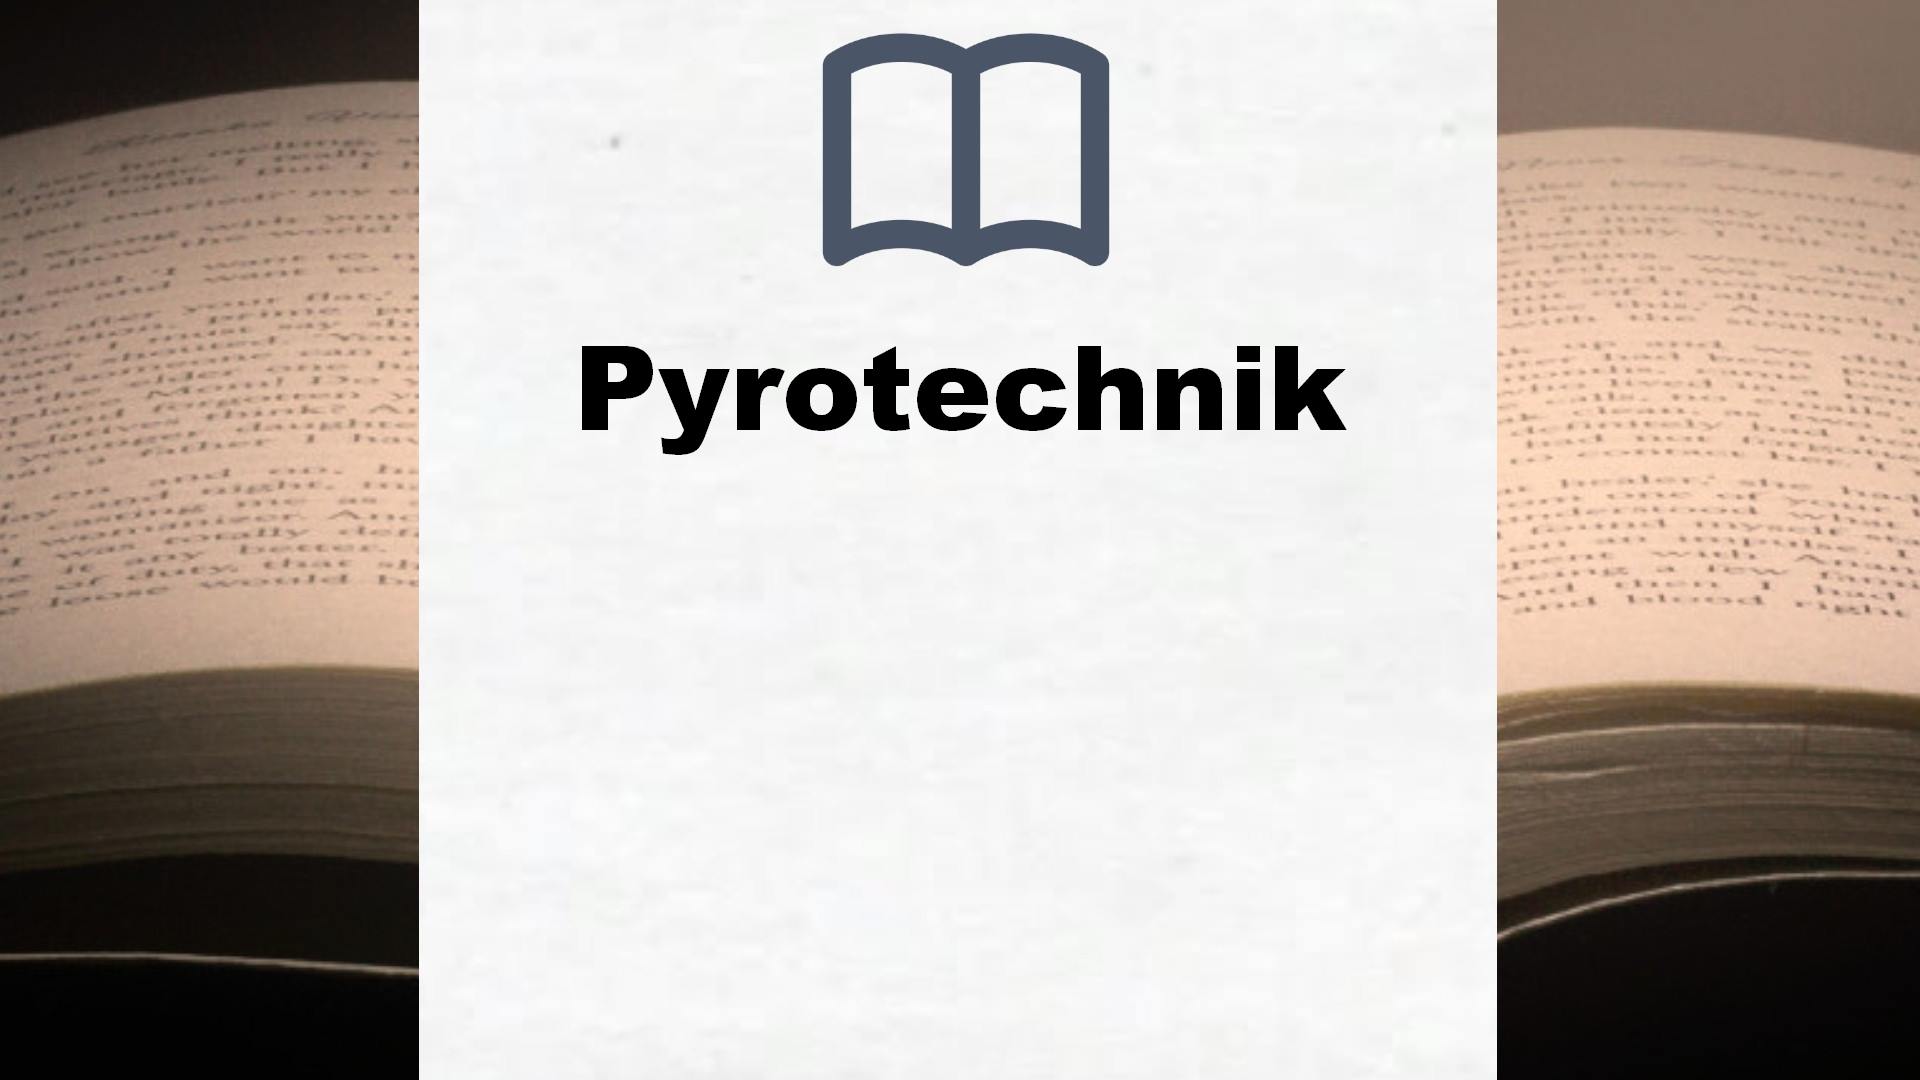 Bücher über Pyrotechnik